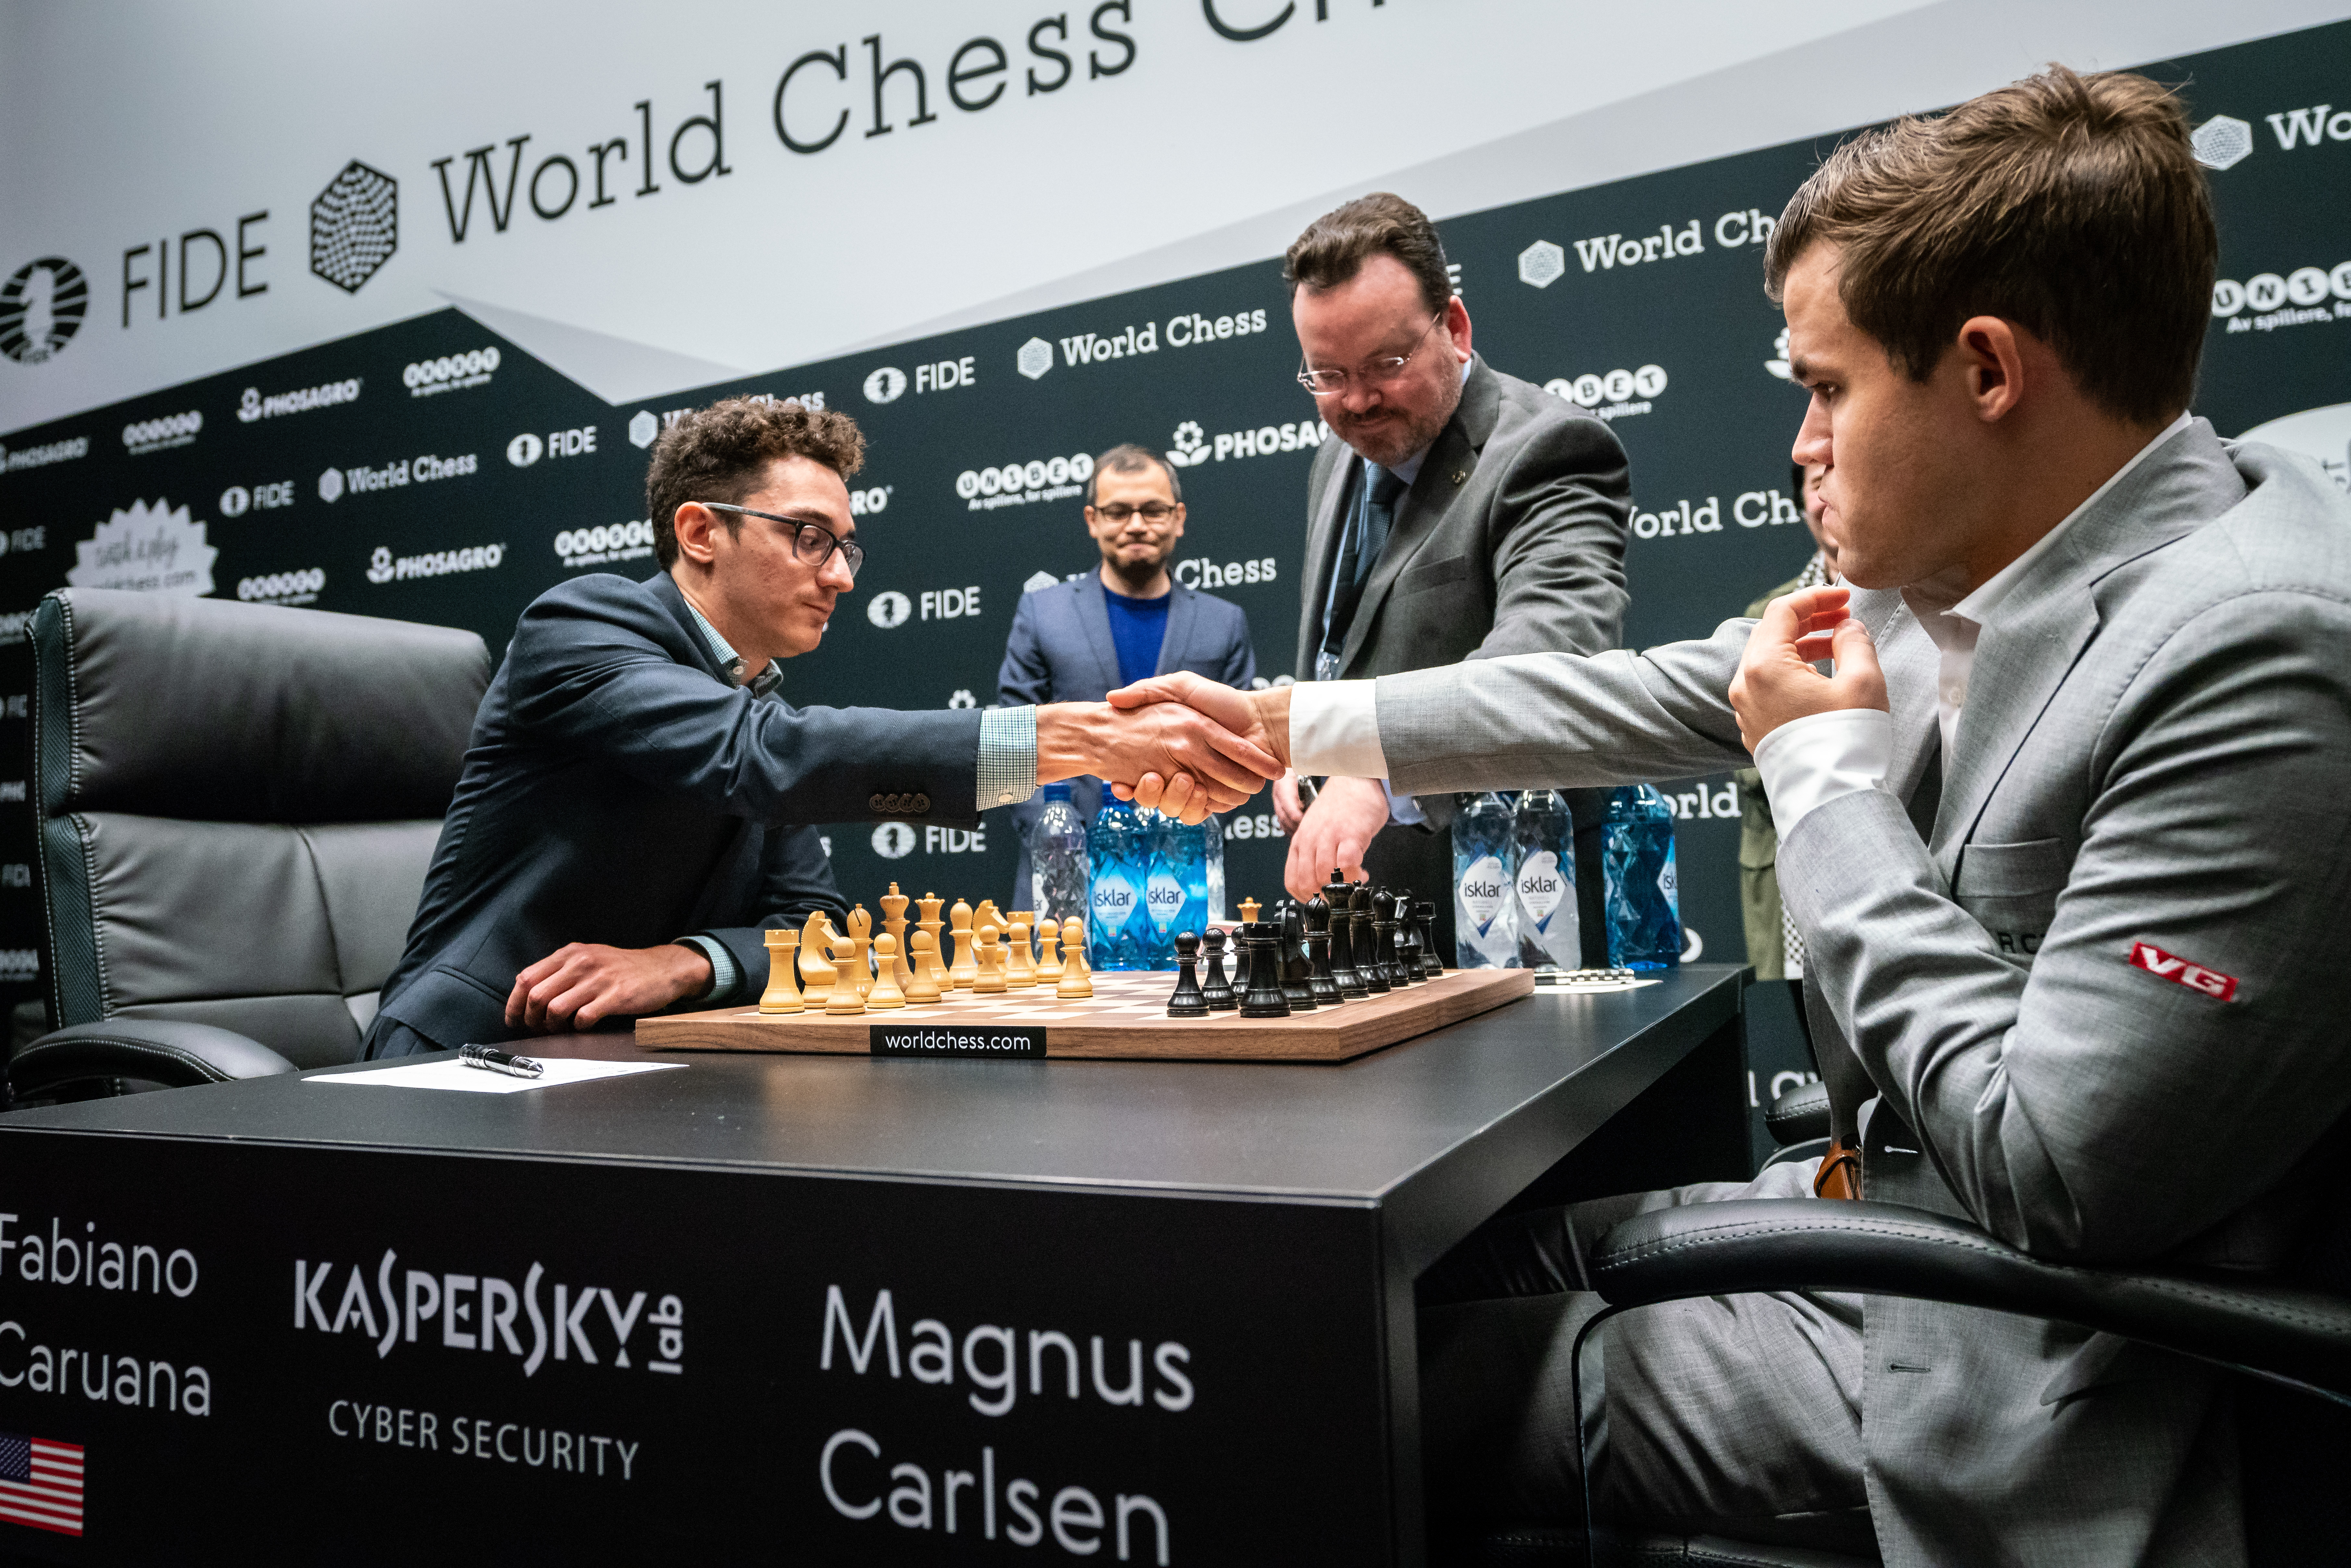 November 2017 FIDE Ratings: Magnus Carlsen supreme again